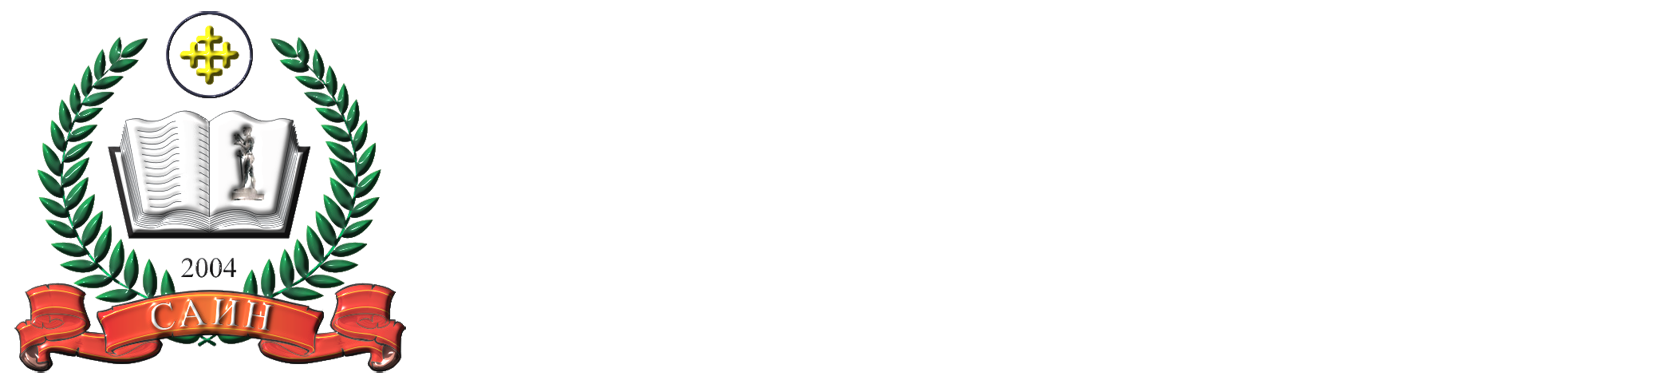 Српска академија изумитеља и научника САИН